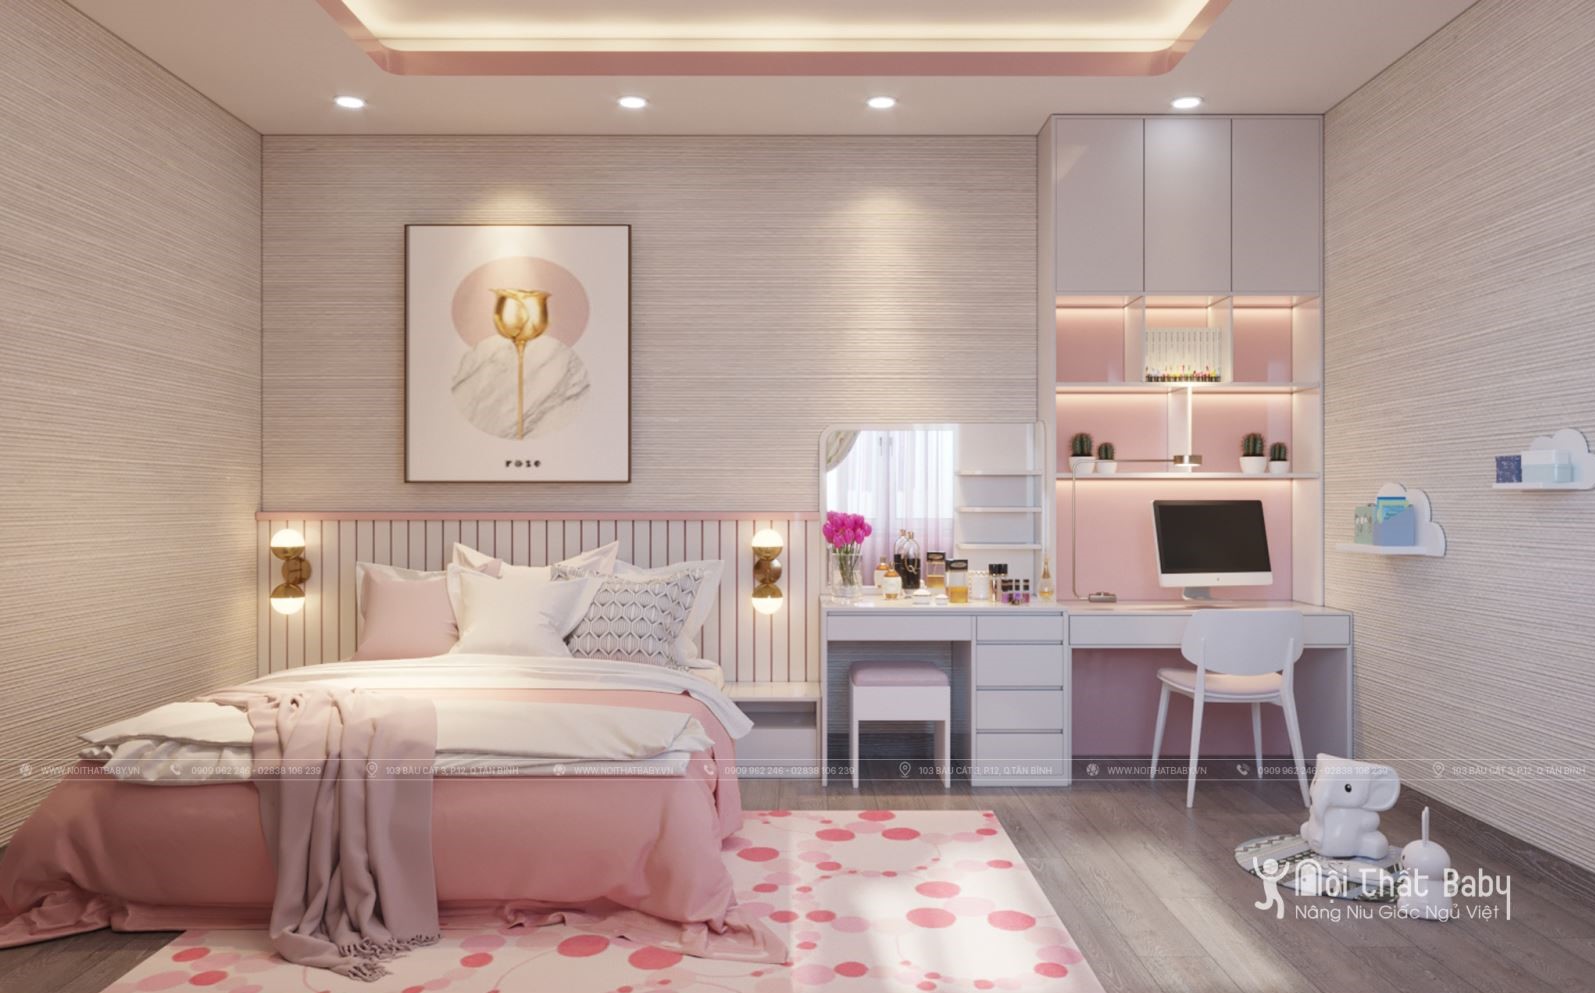 Top 27 mẫu giường ngủ đẹp nhất năm 2020 dành cho bé gái: Giường ngủ đẹp cho bé gái năm 2024 sẽ là những mẫu giường thời thượng đầy thú vị và sáng tạo. Với hàng loạt mẫu giường được lựa chọn kỹ càng, đa dạng về kiểu dáng, màu sắc và chất liệu, giúp bé trở nên thoải mái hơn khi ngủ. Hãy để bé yêu của bạn được trải nghiệm những giấc ngủ êm đềm nhất trong một không gian sống đầy tiện nghi và thân thiện.